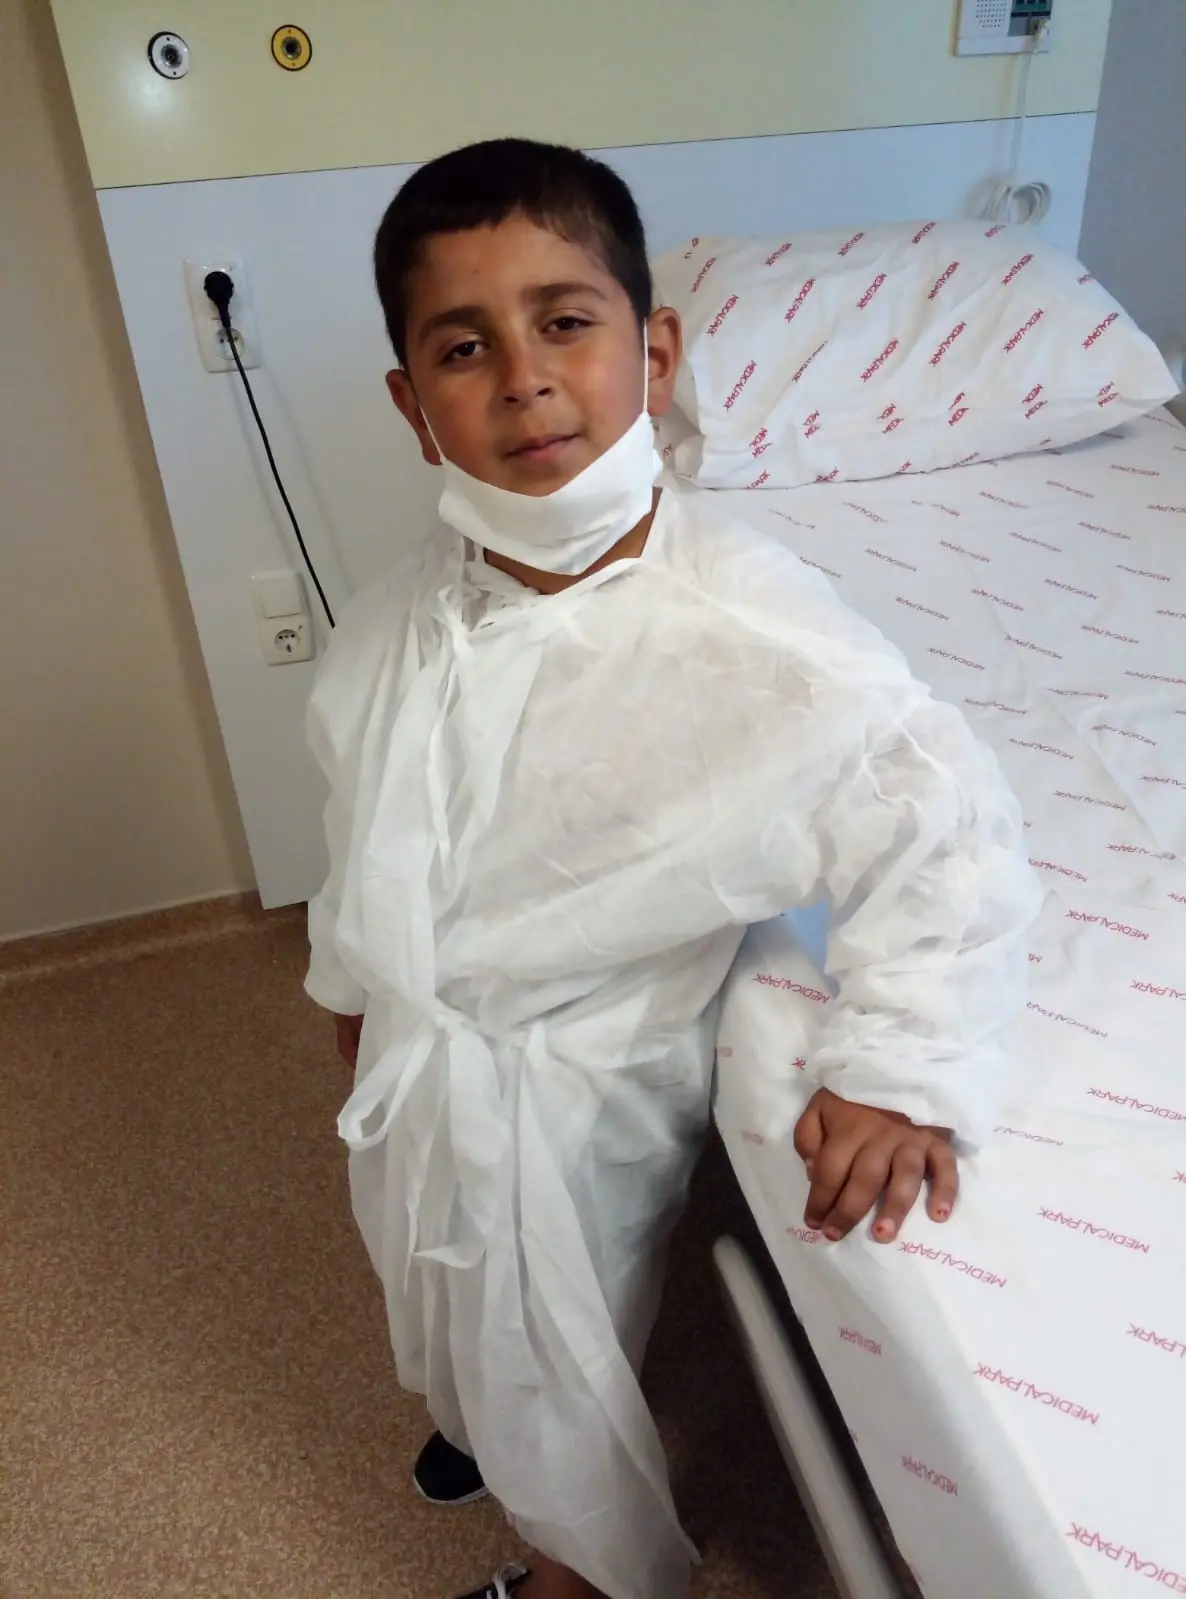 ALD hastası küçük Bünyamin Antalya'da ilik nakli olacak